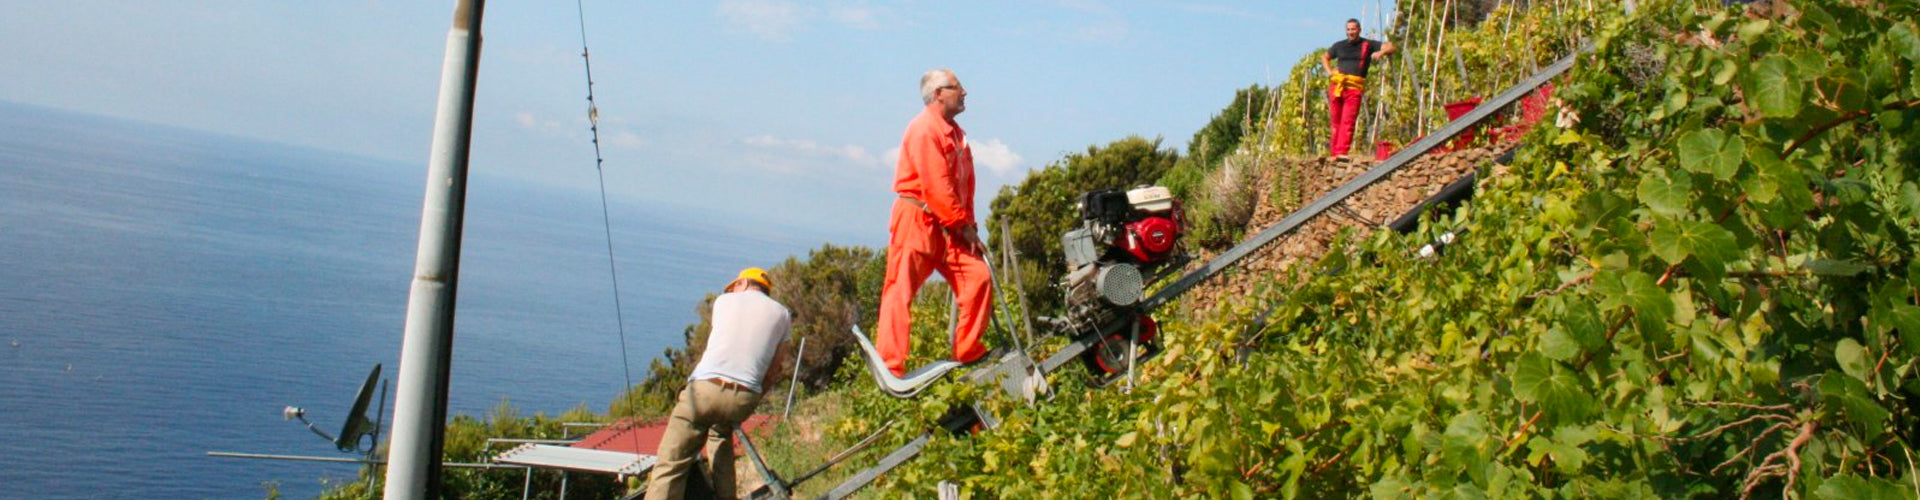 Workers in the steep Campogrande vineyard overlooking the Ligurian sea.